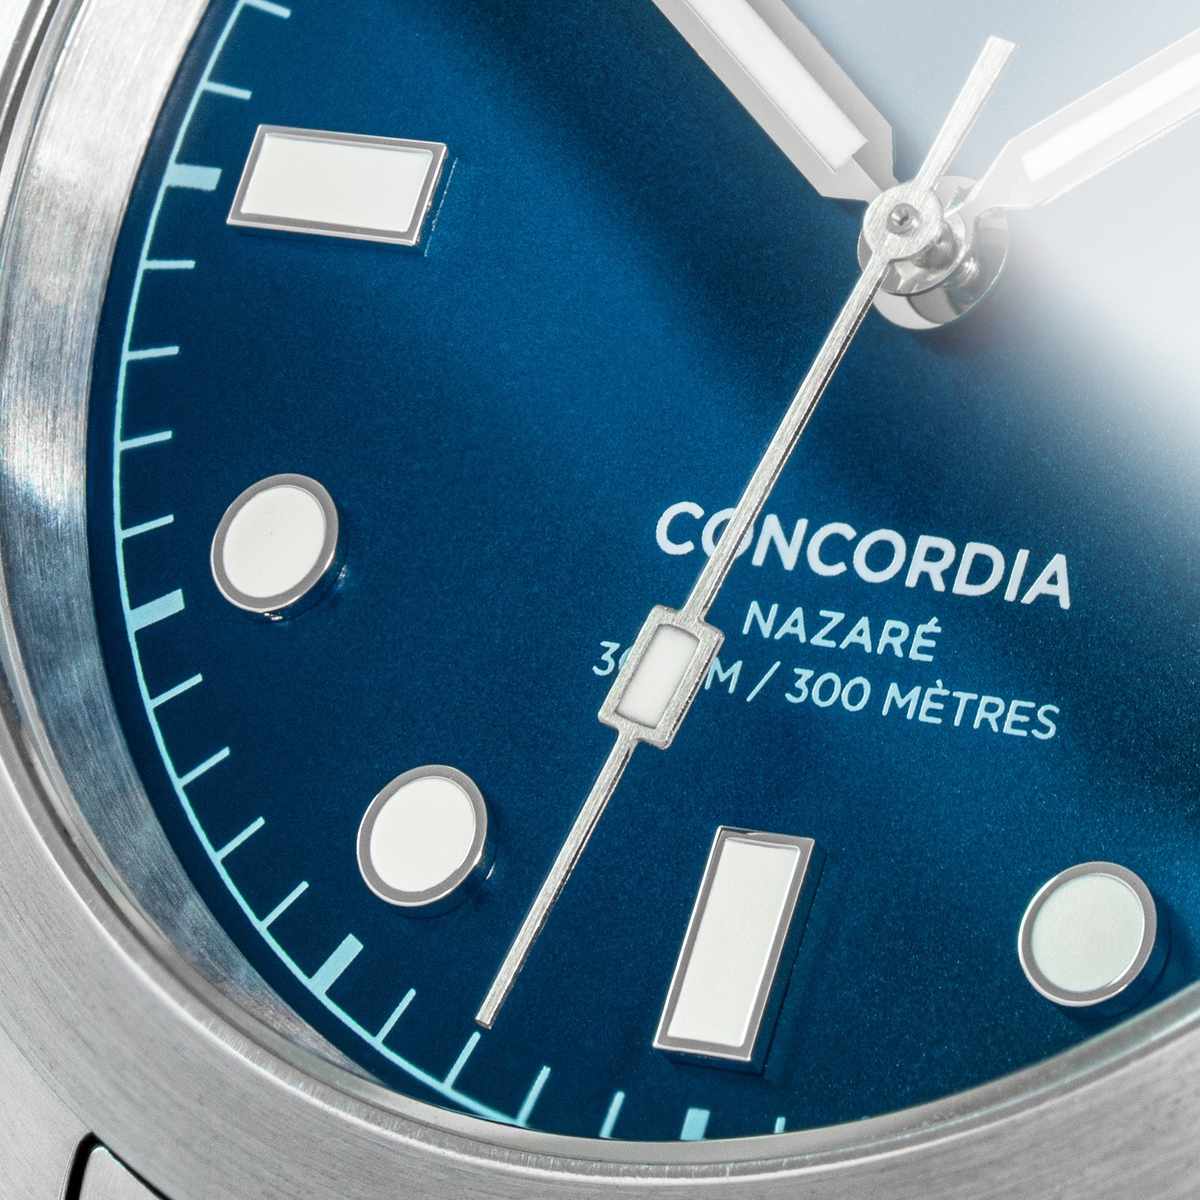 Vue de face du modèle de montre quartz étanche pour homme Concordia Nazaré avec cadran bleu